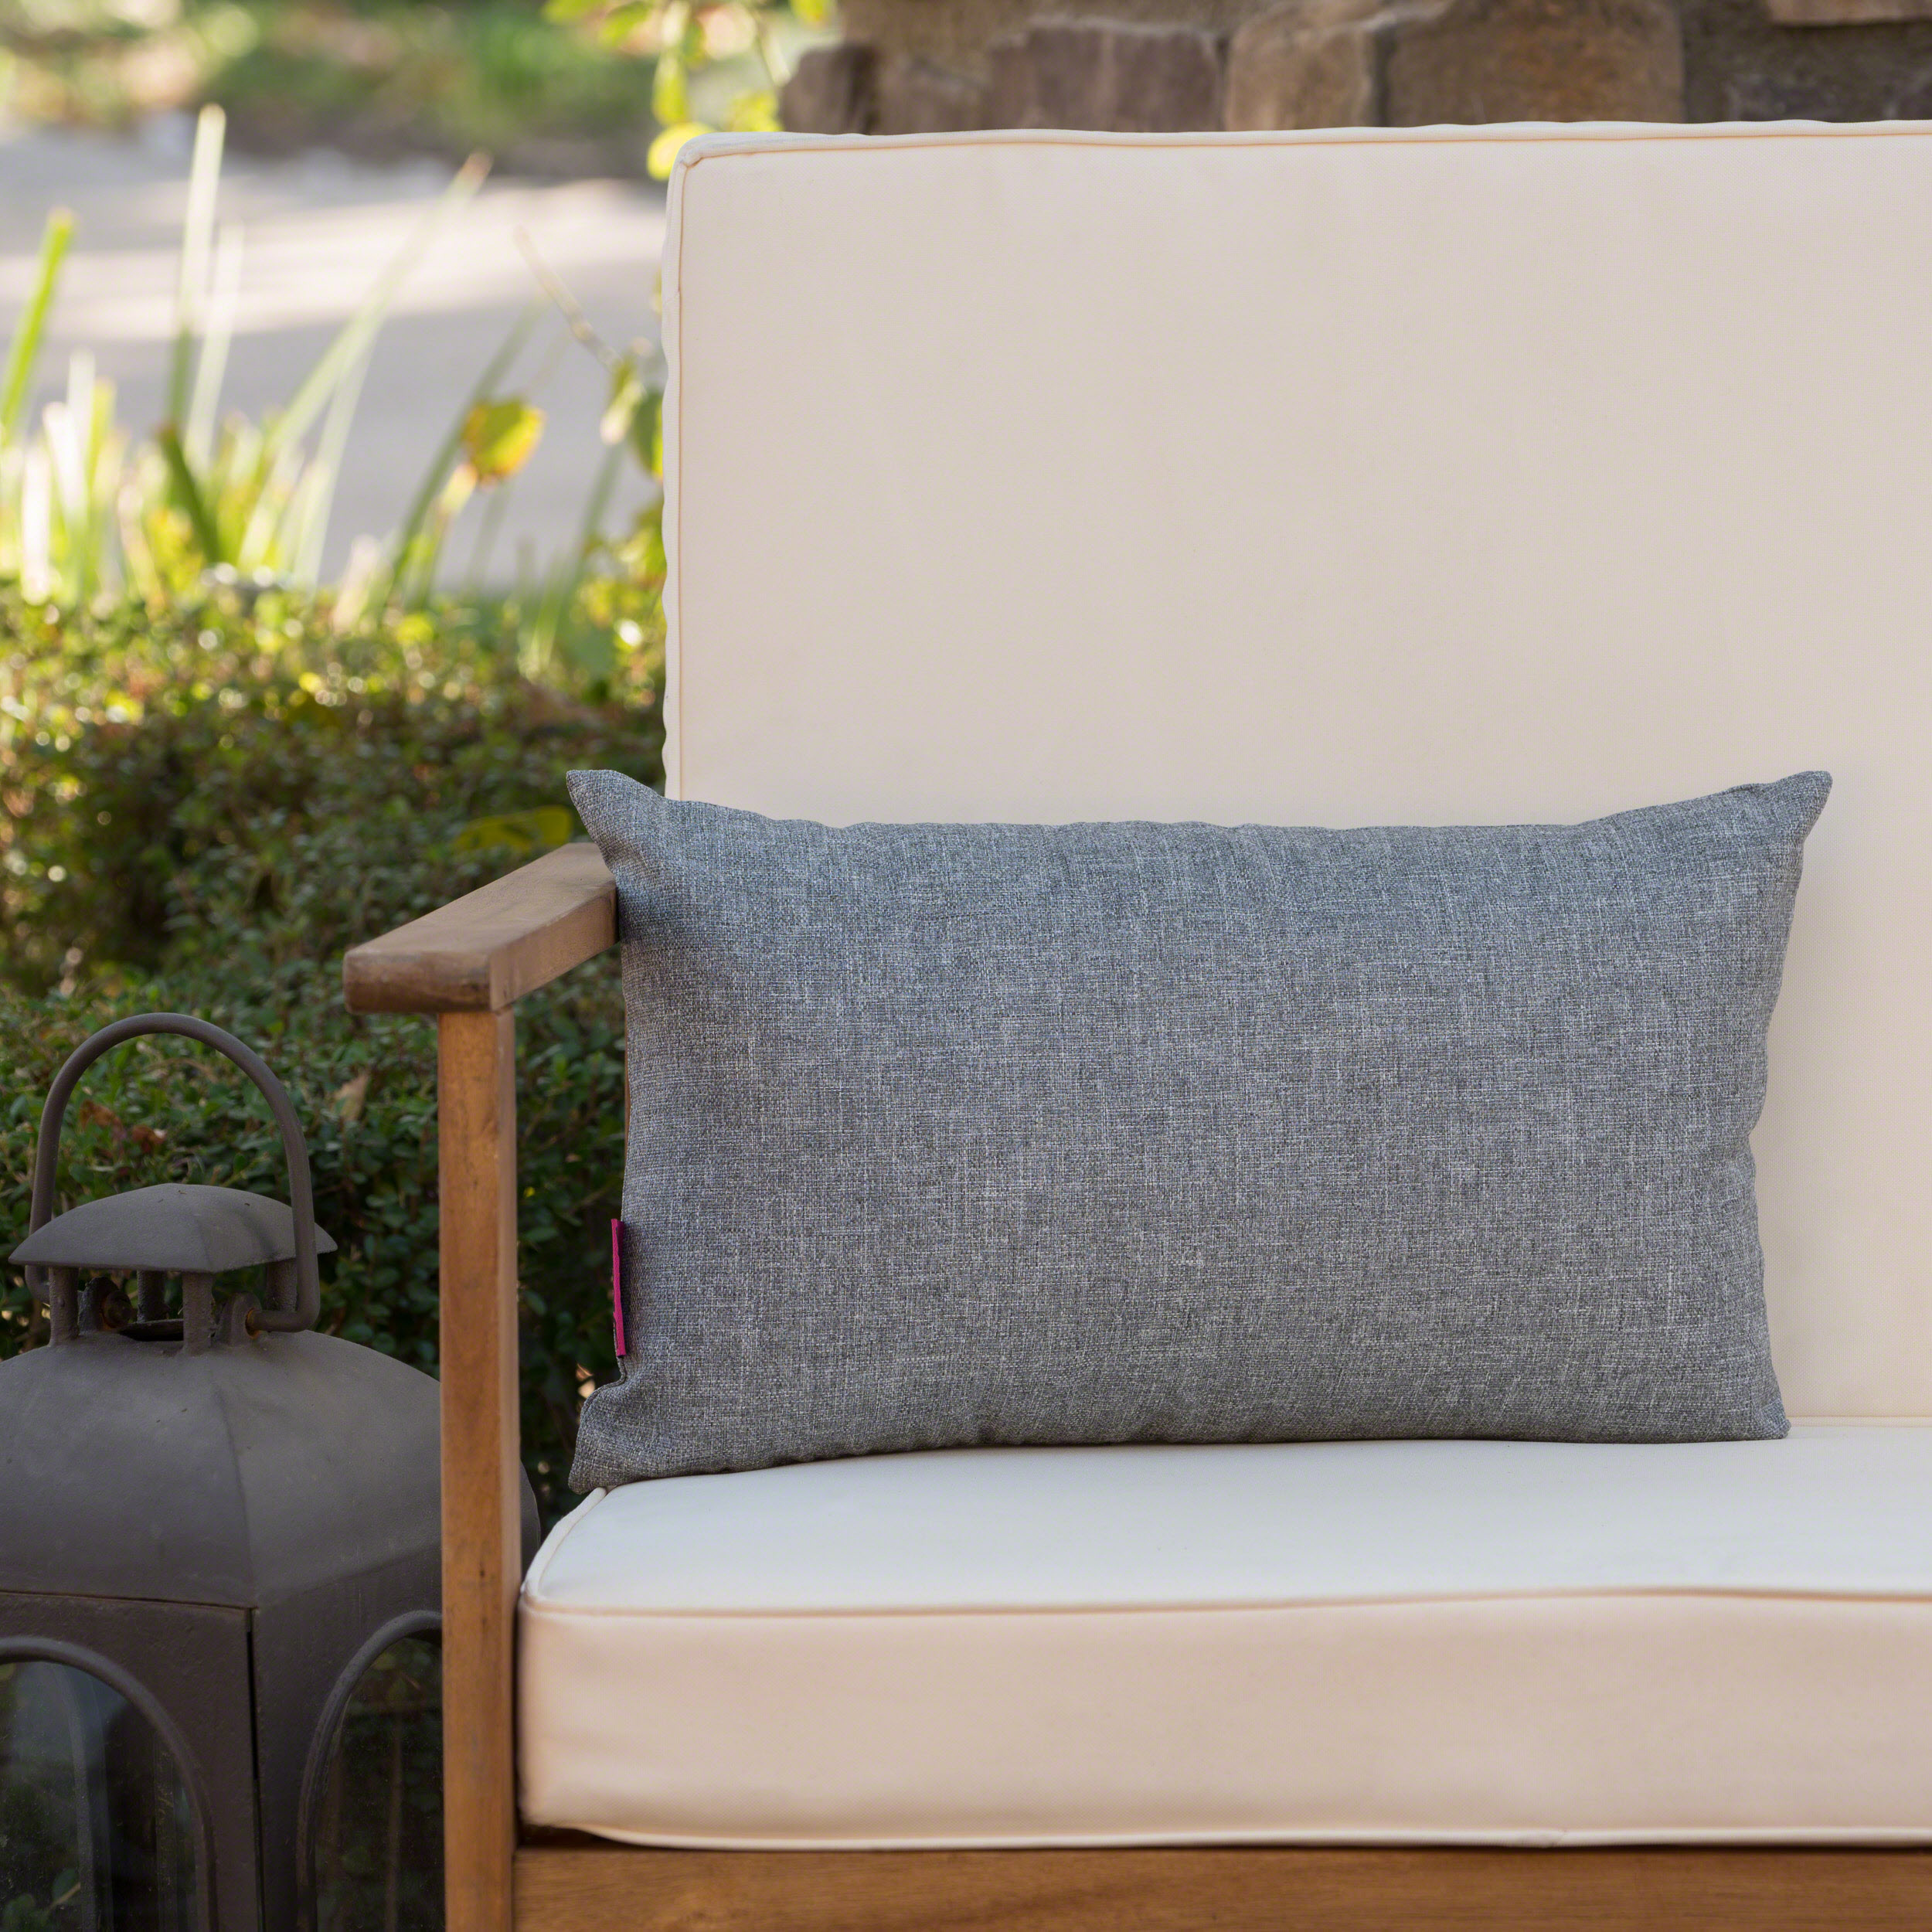 Noble House Coronado 18.5x11.5" Outdoor Fabric Throw Pillow in Gray - image 8 of 11